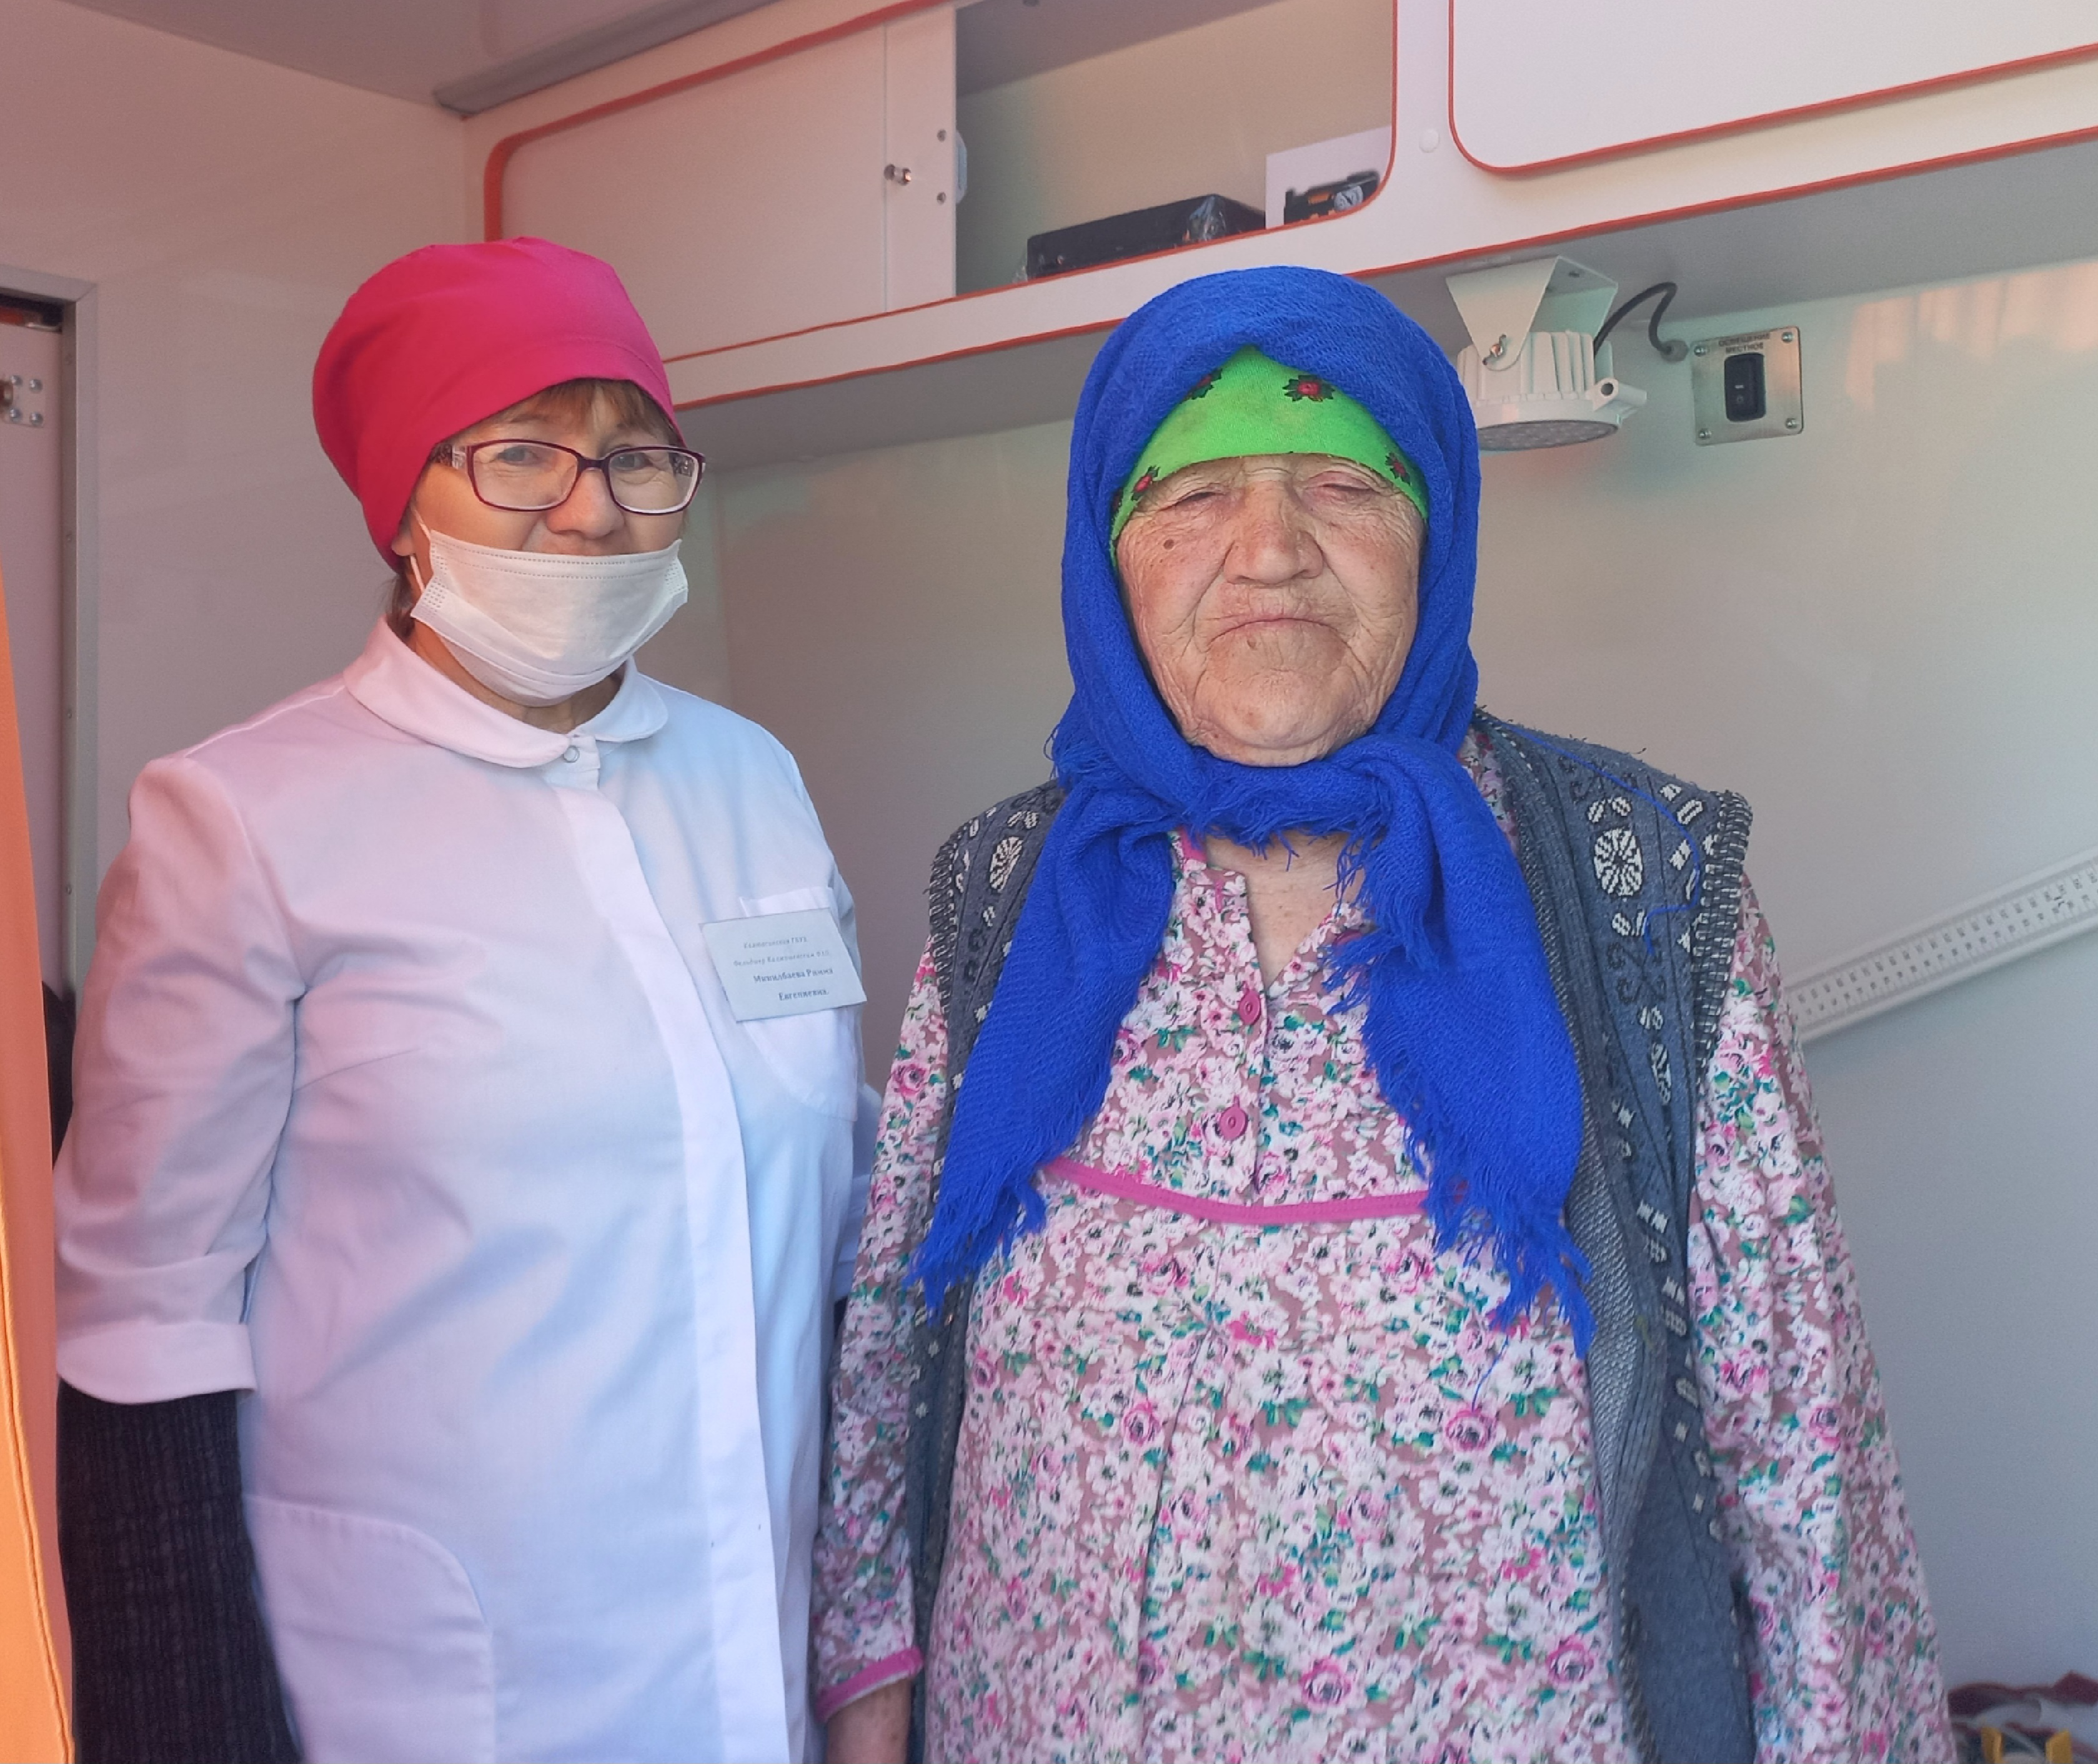 В Калтасинском районе новый ФАП на колёсах принял своих первых пациентов